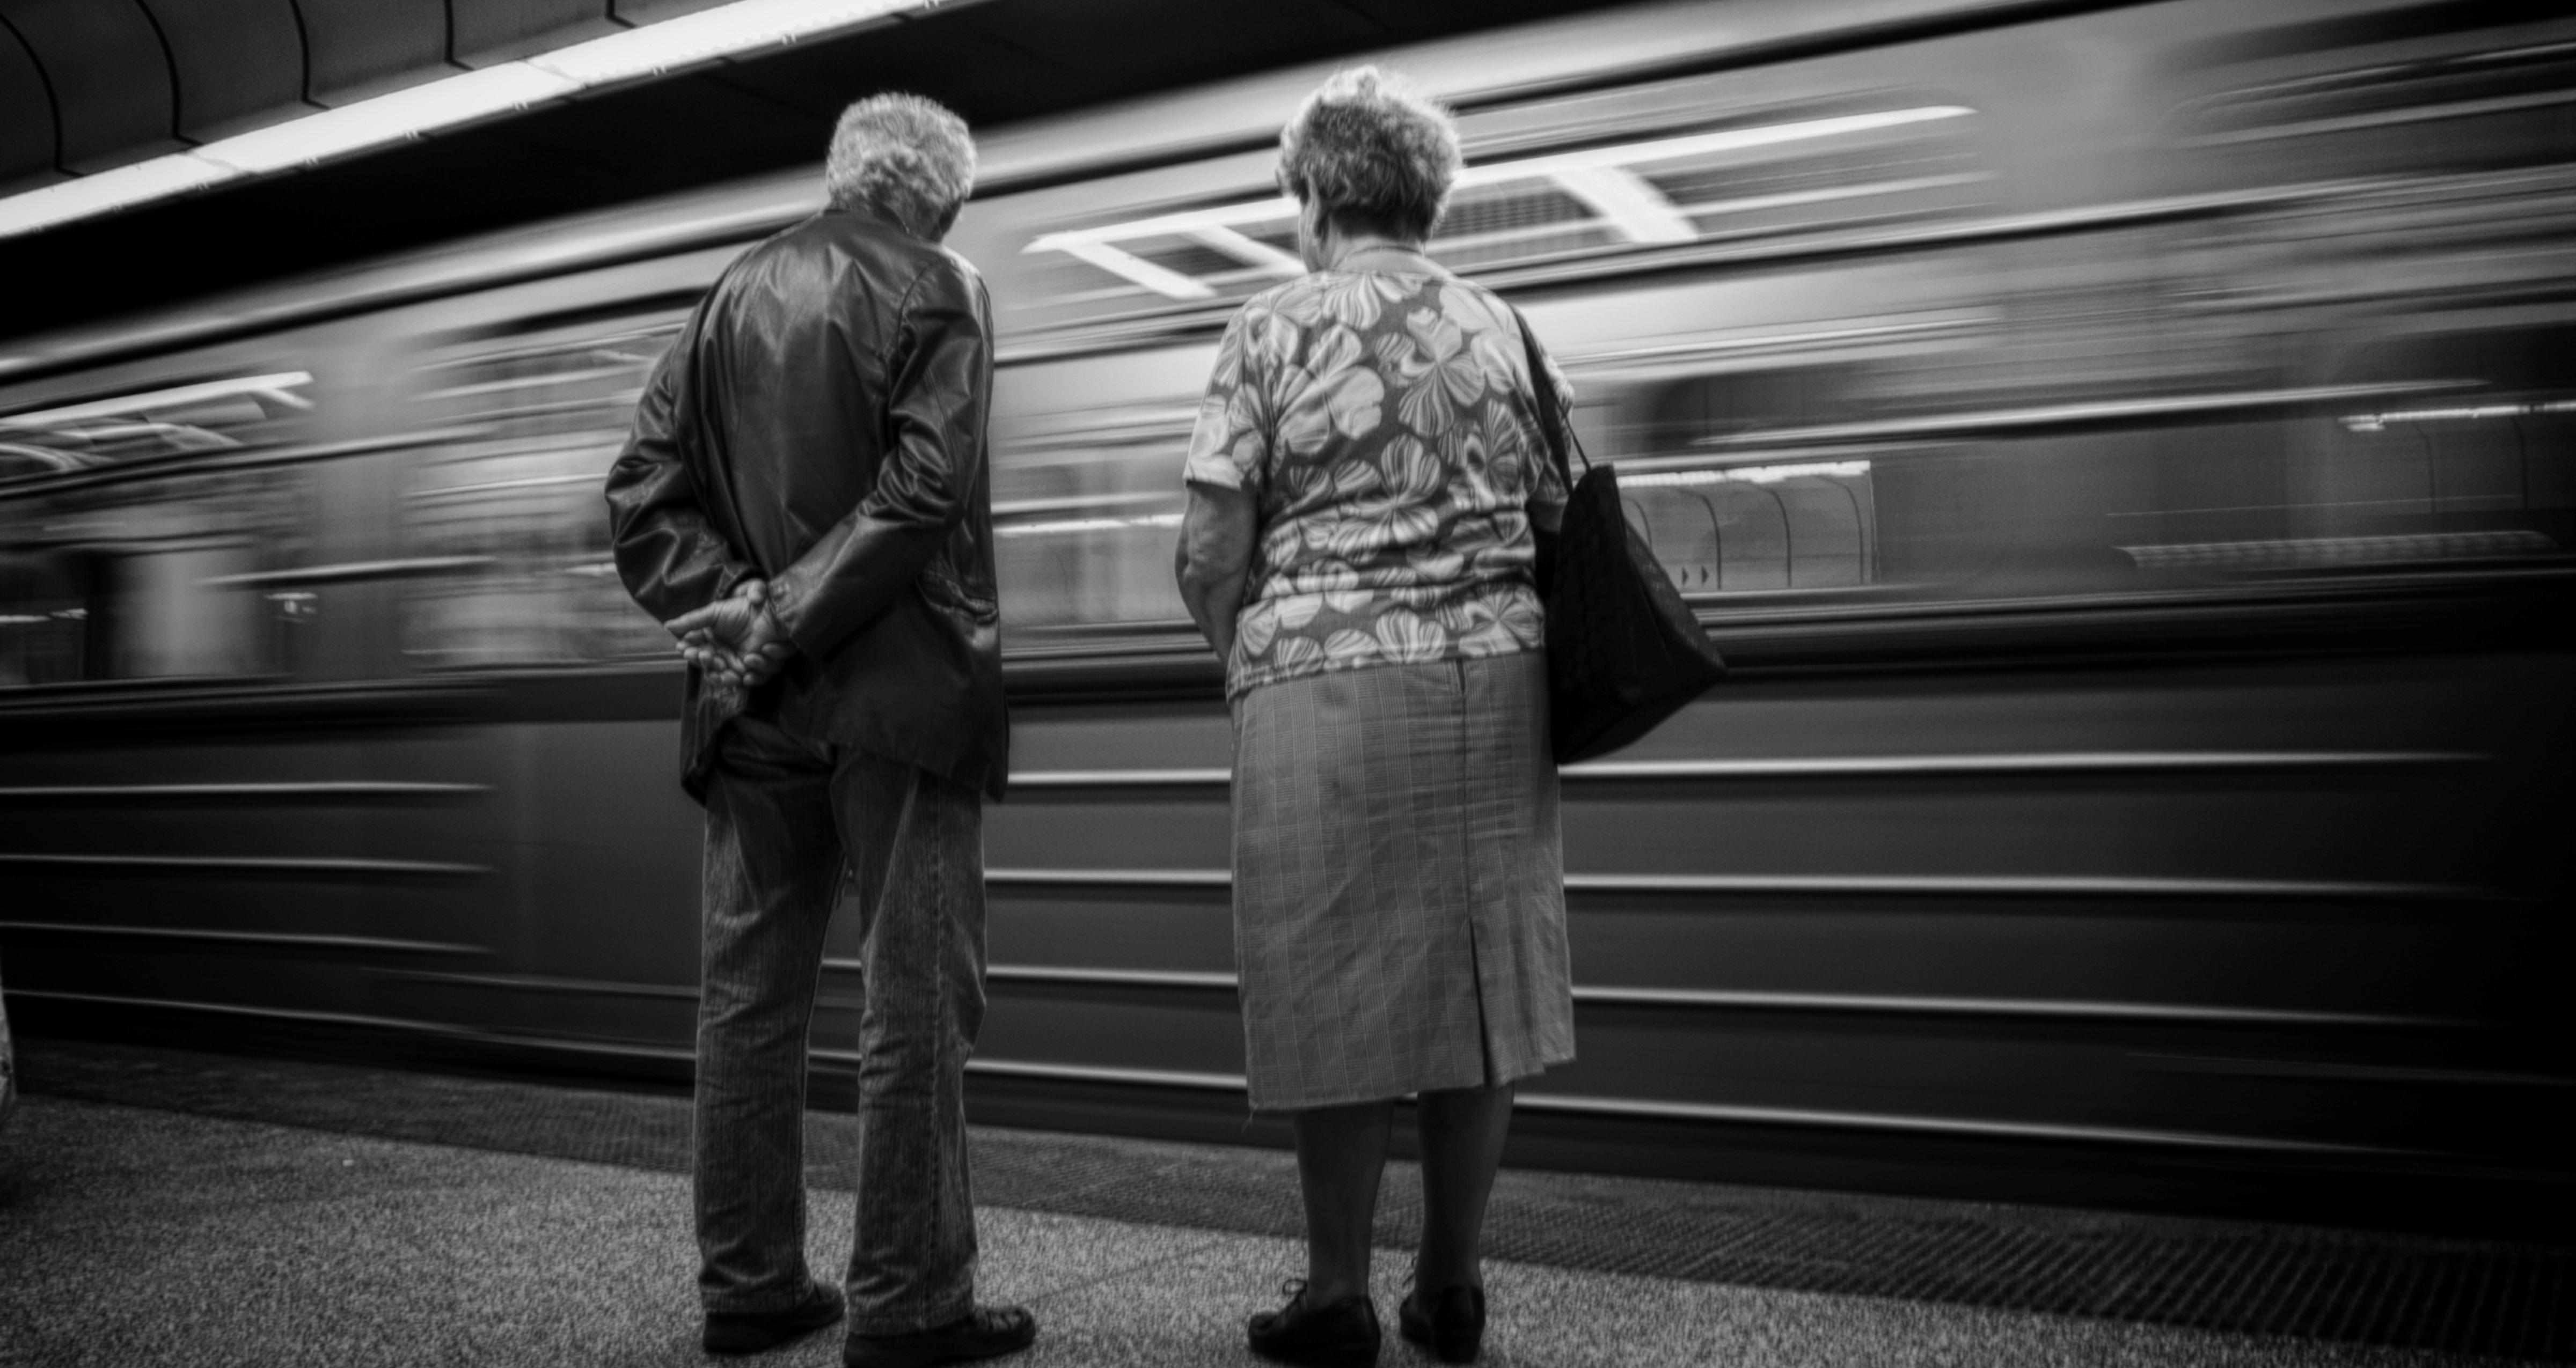 Et eldre par står på en perrong og et tog suser forbi